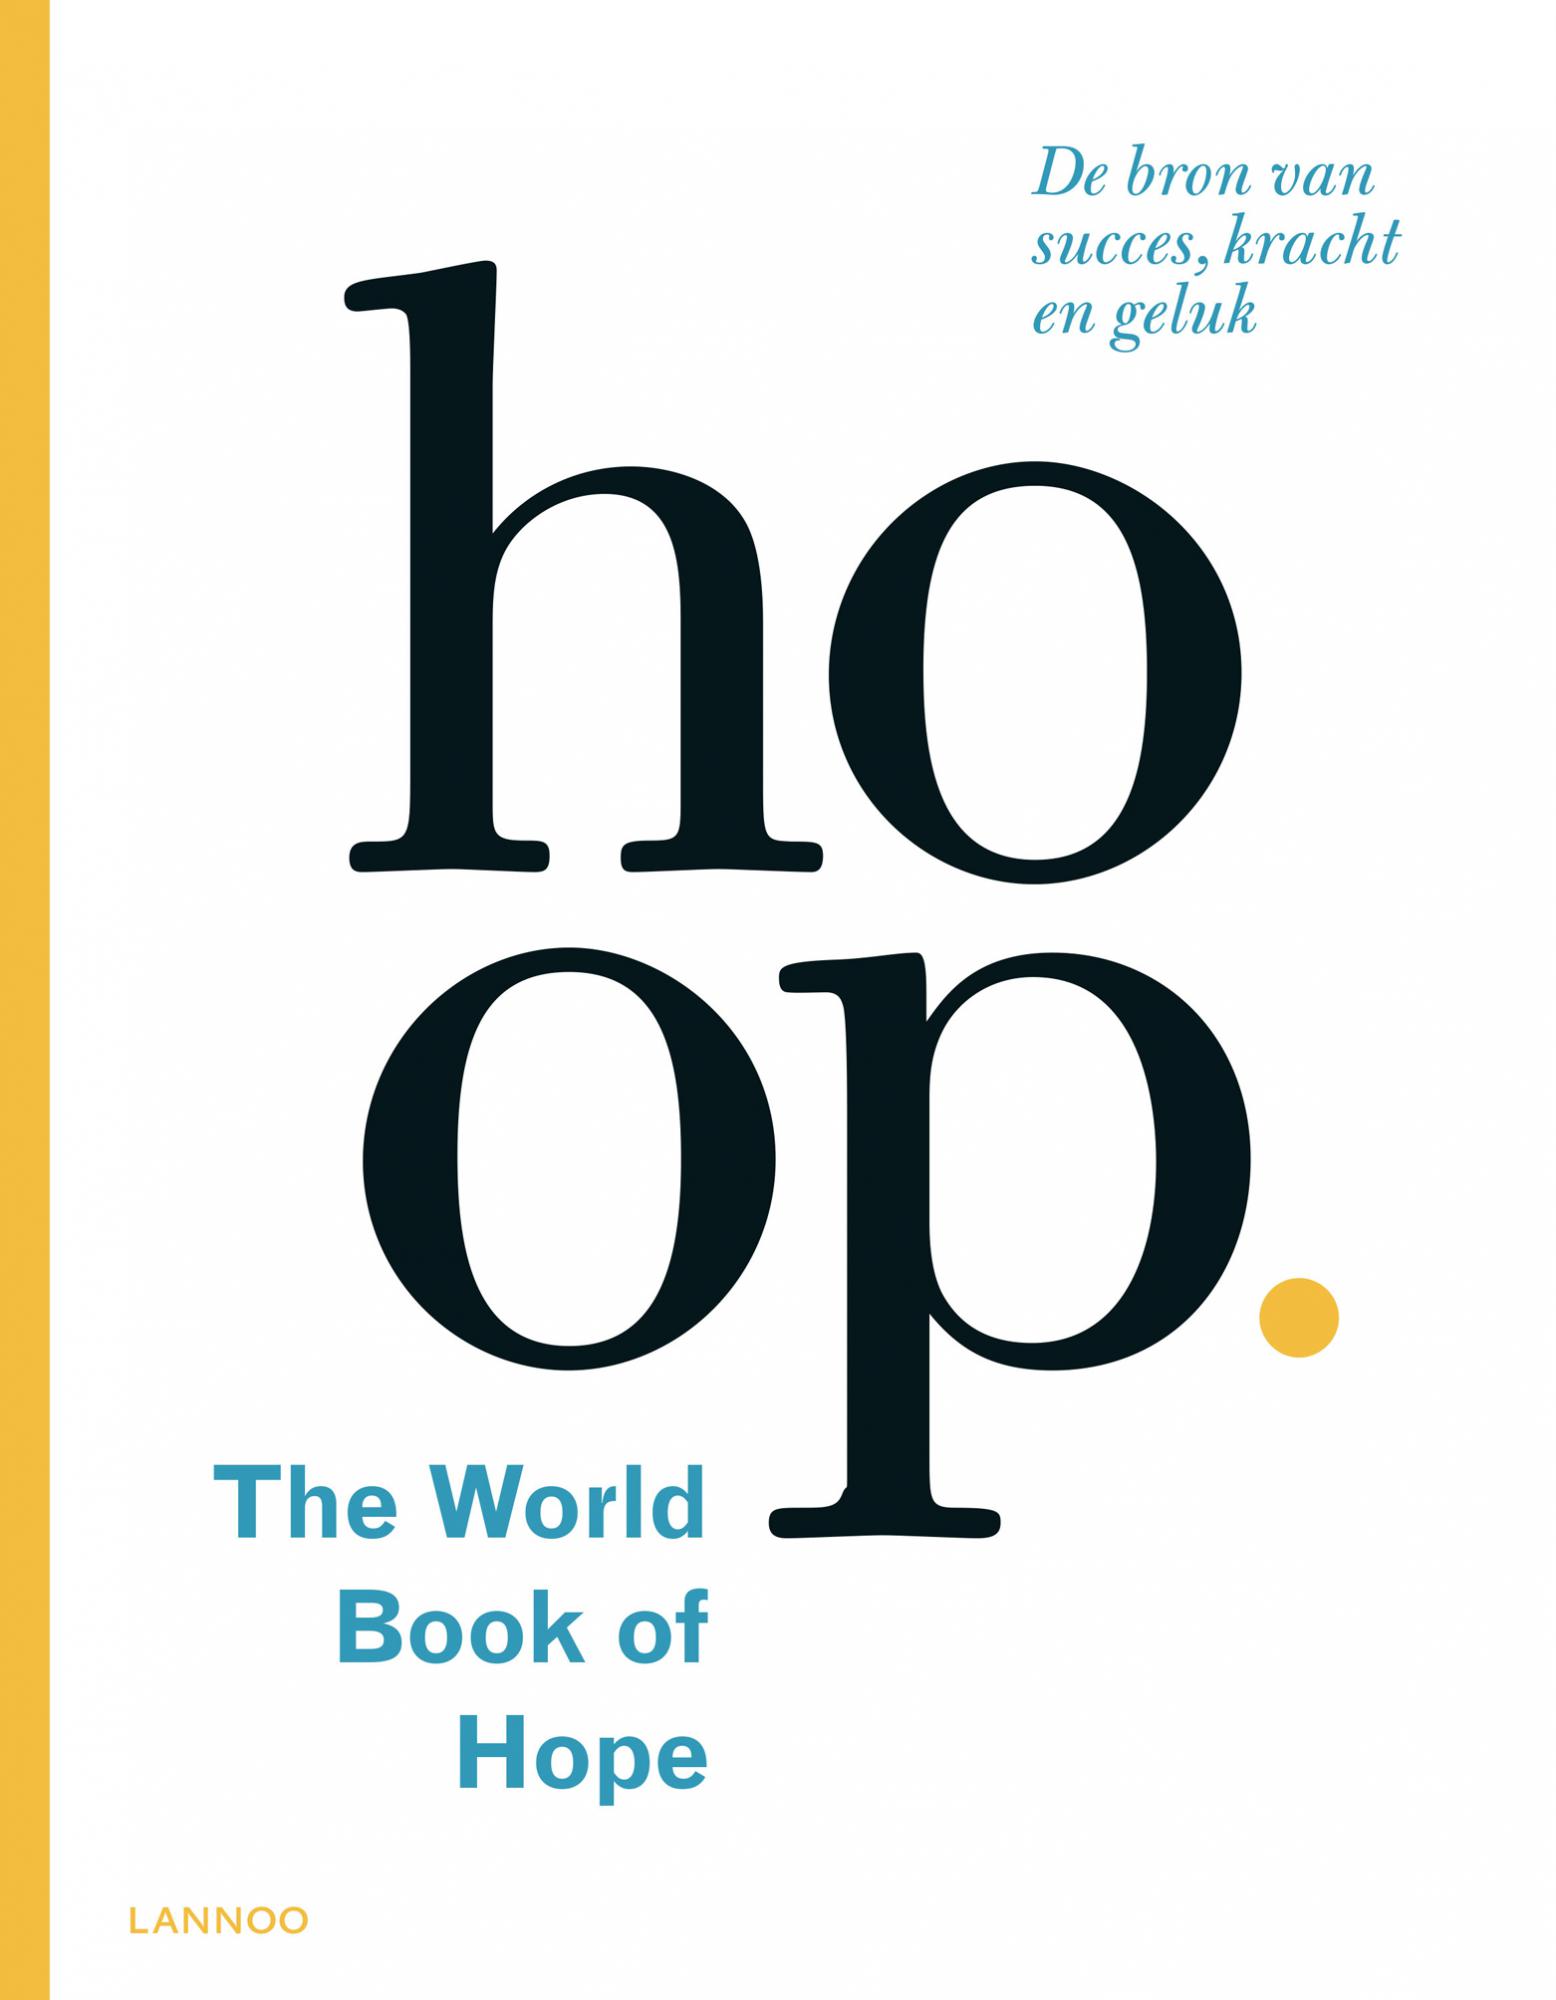 Het boek dat Leo Bormans schreef over 'hoop'.